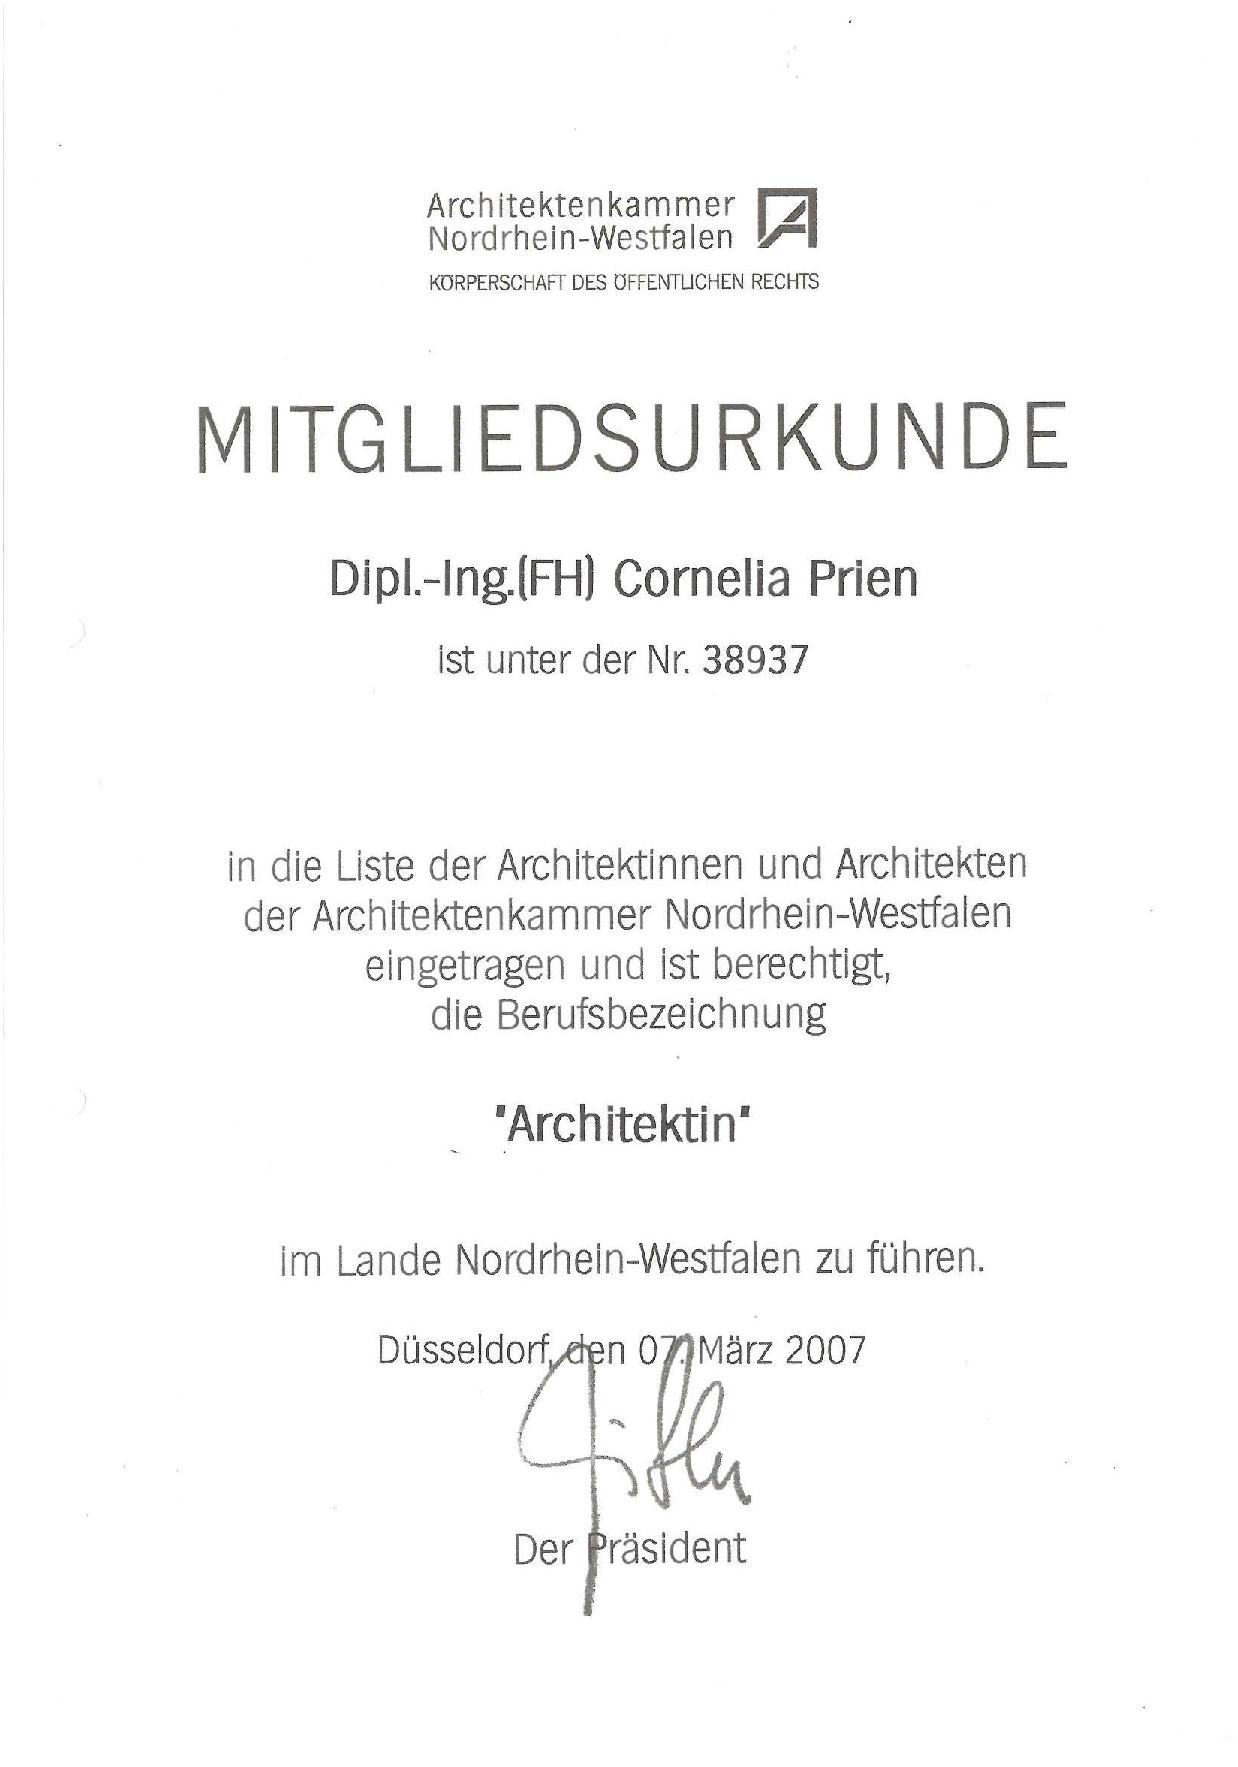 Mitgliedsurkunde Architektenkammer-001